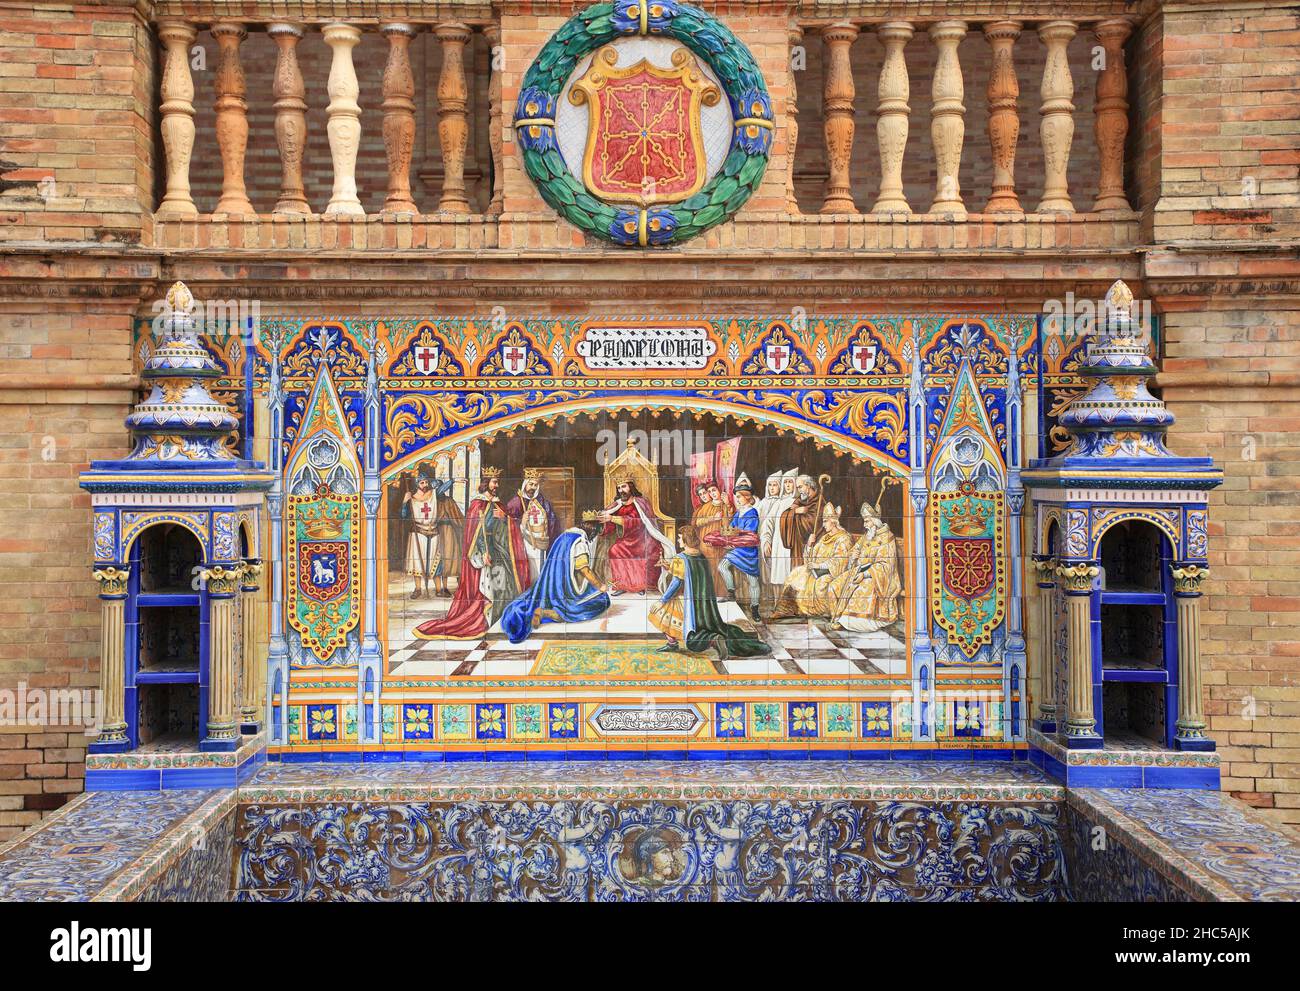 Particolare di bella parete esterna ornata con piastrelle in ceramica nella storica Plaza de Espana o Piazza di Spagna. Siviglia, Spagna. Foto Stock